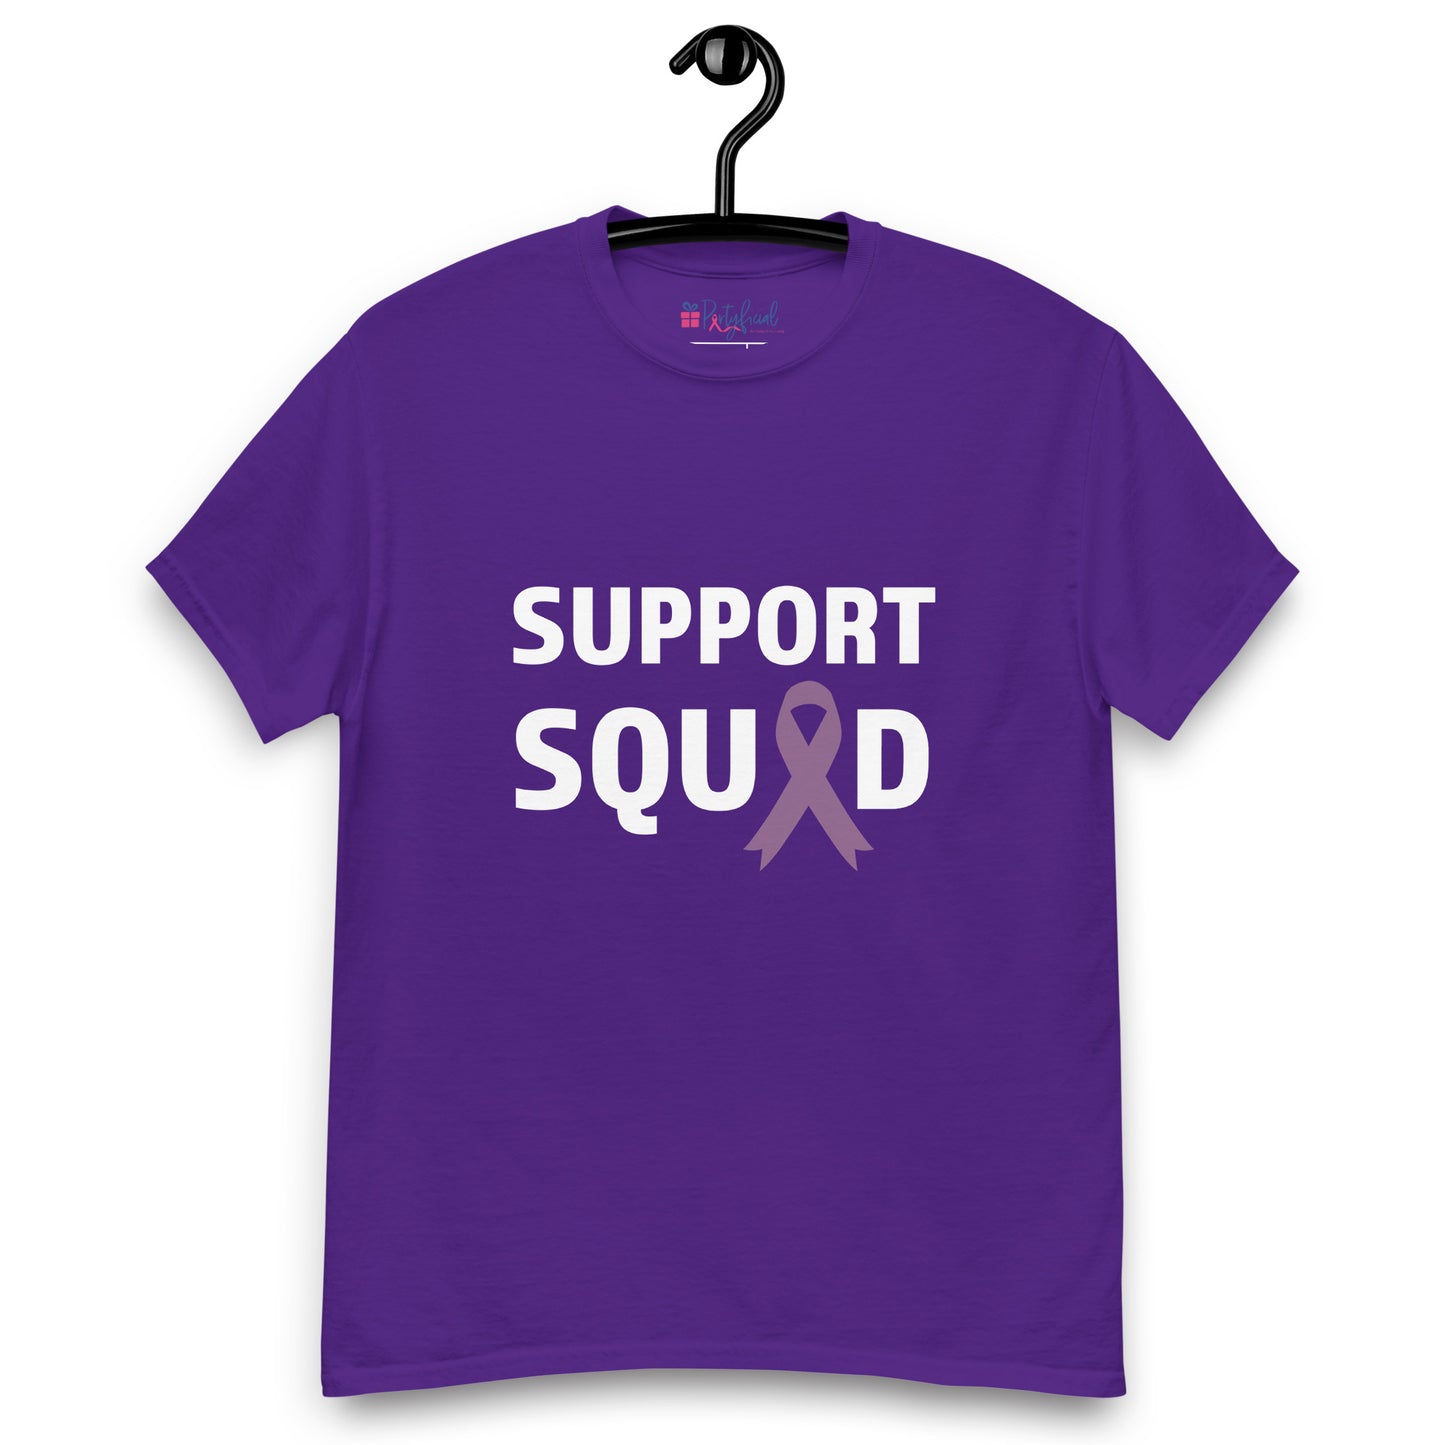 Lupus Support Squad tee